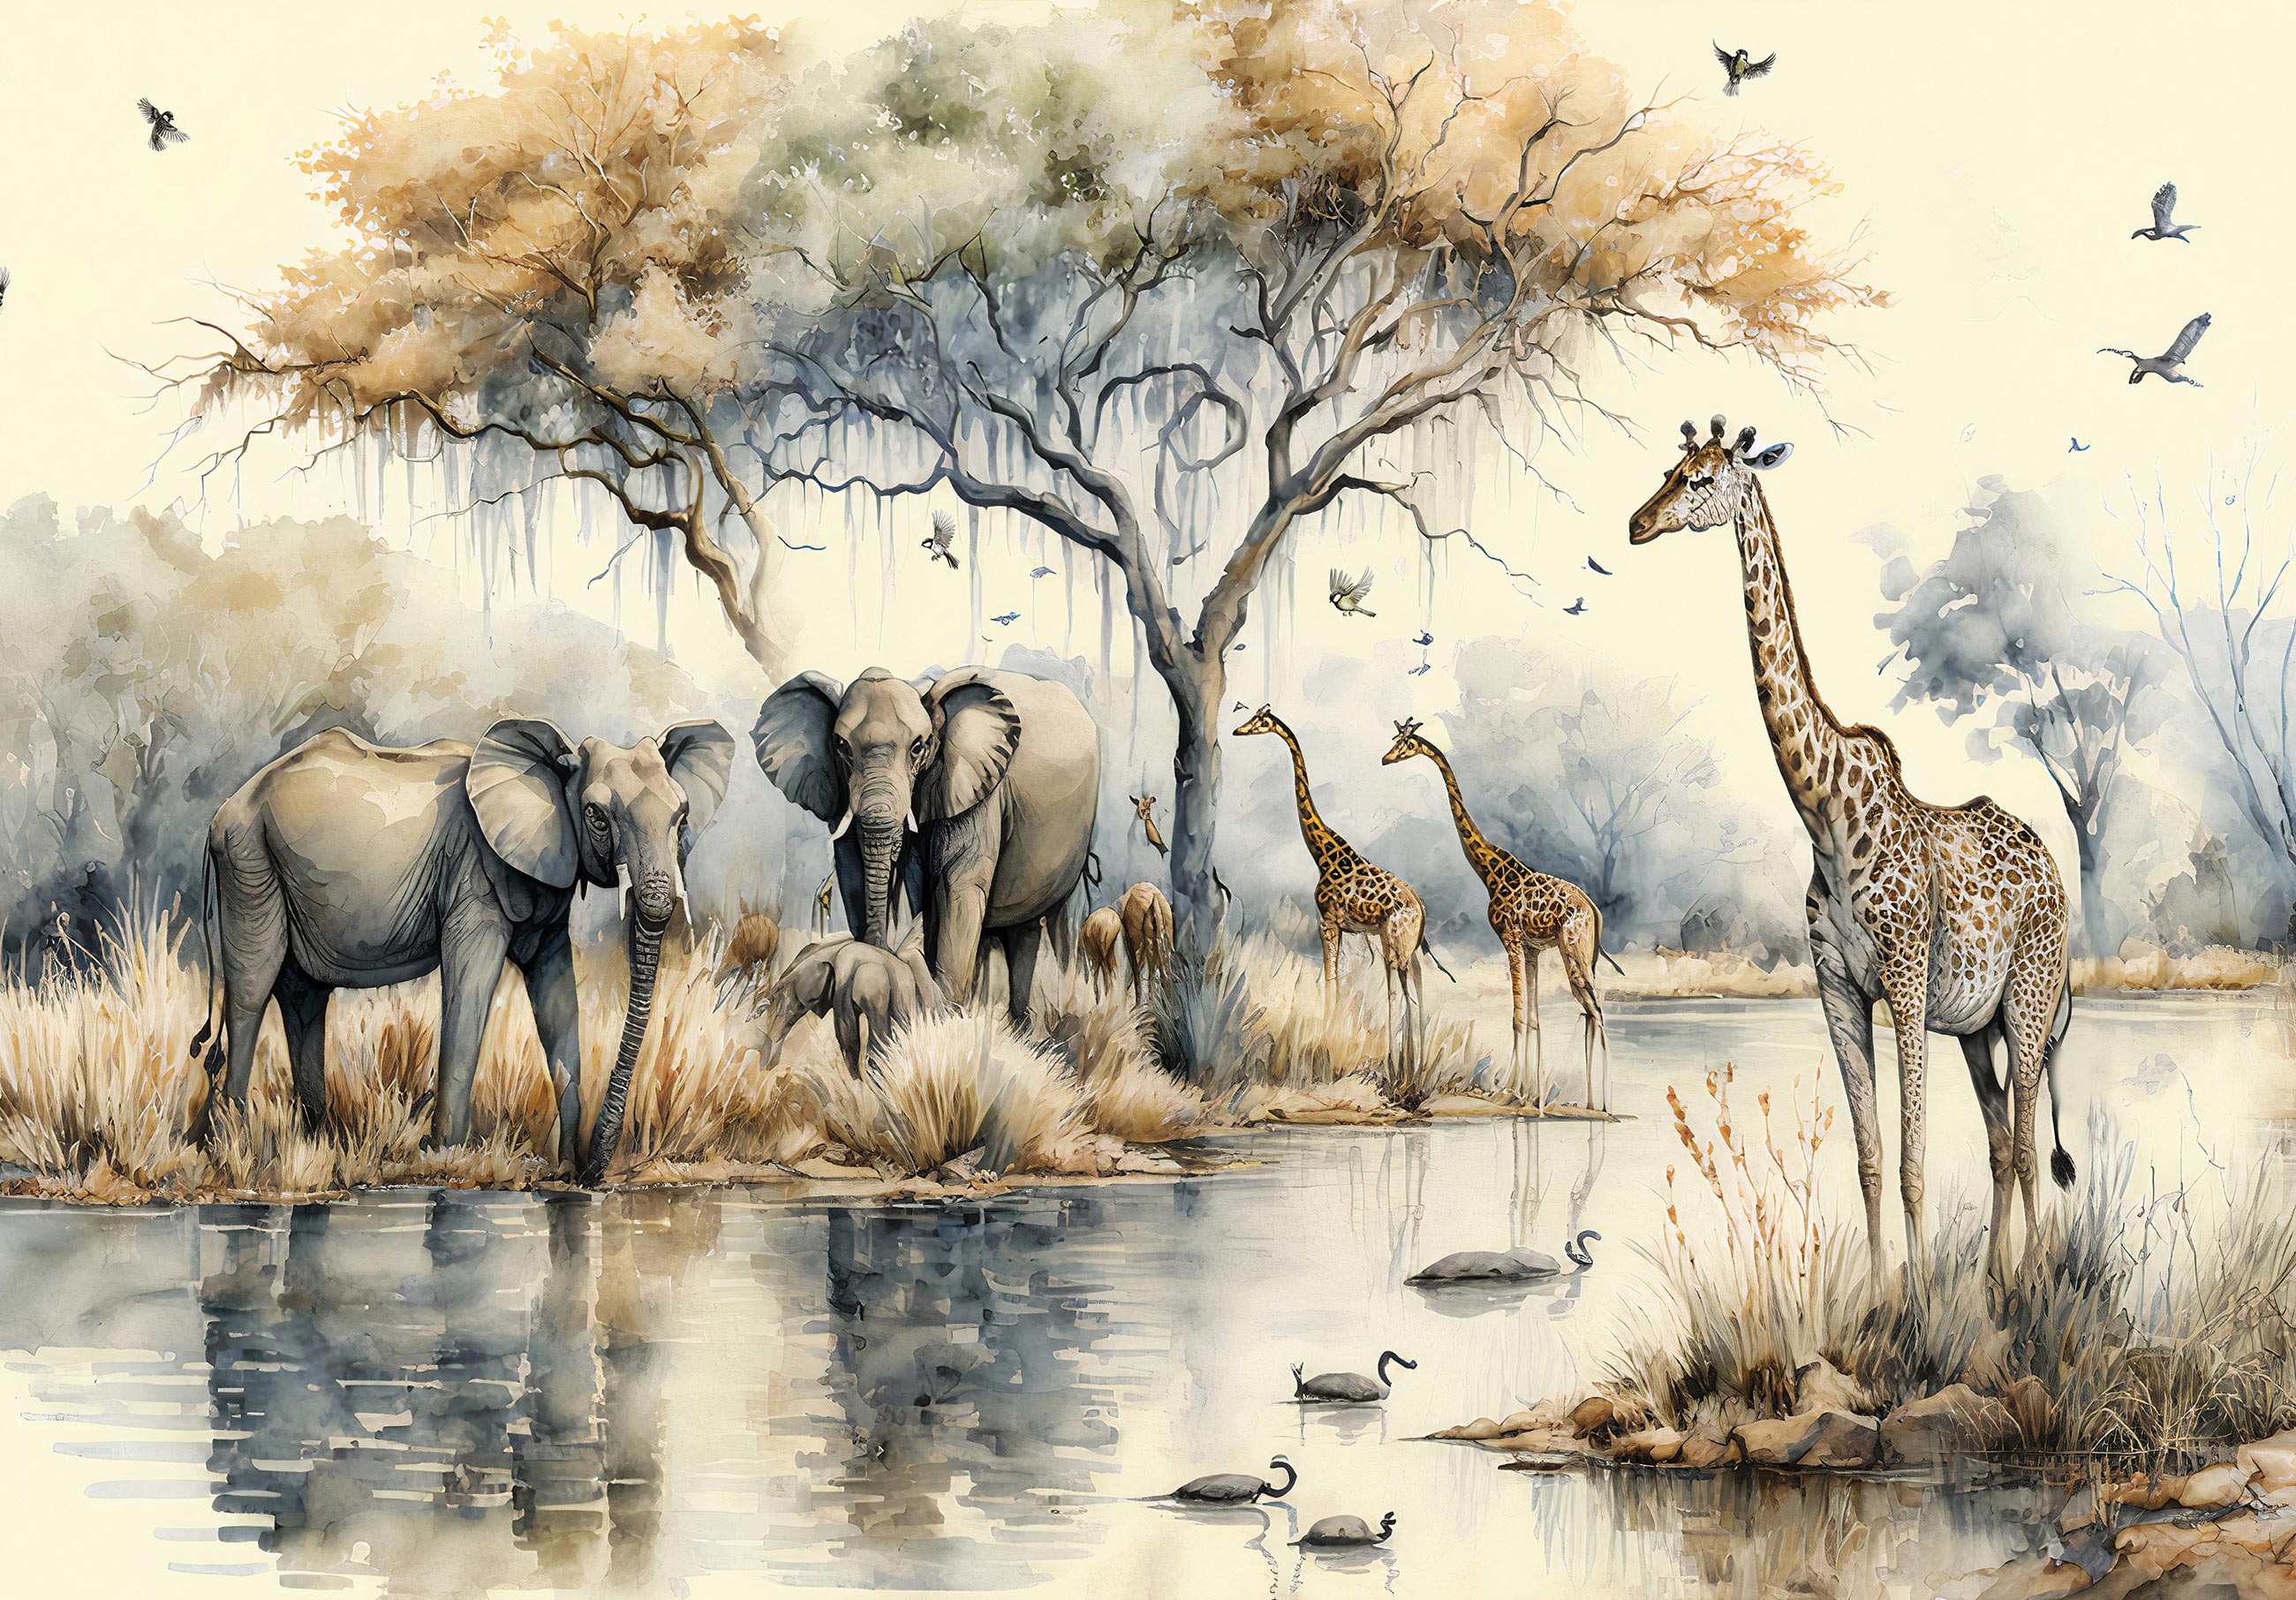 Silhouettes d'animaux de safari, couleur rouille - papier peint